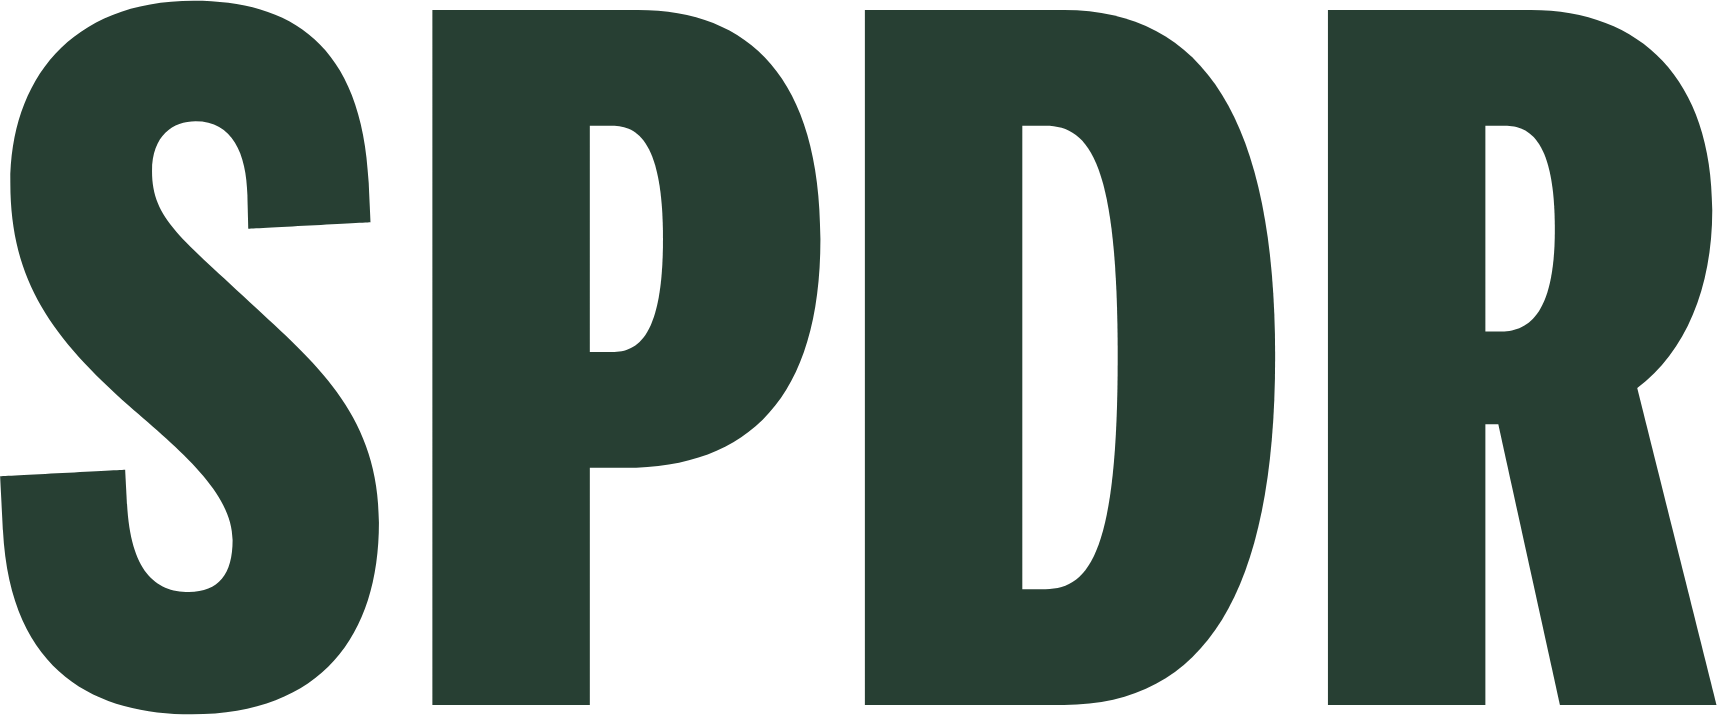 SPDR S&P 500 ETF Trust Logo (transparentes PNG)